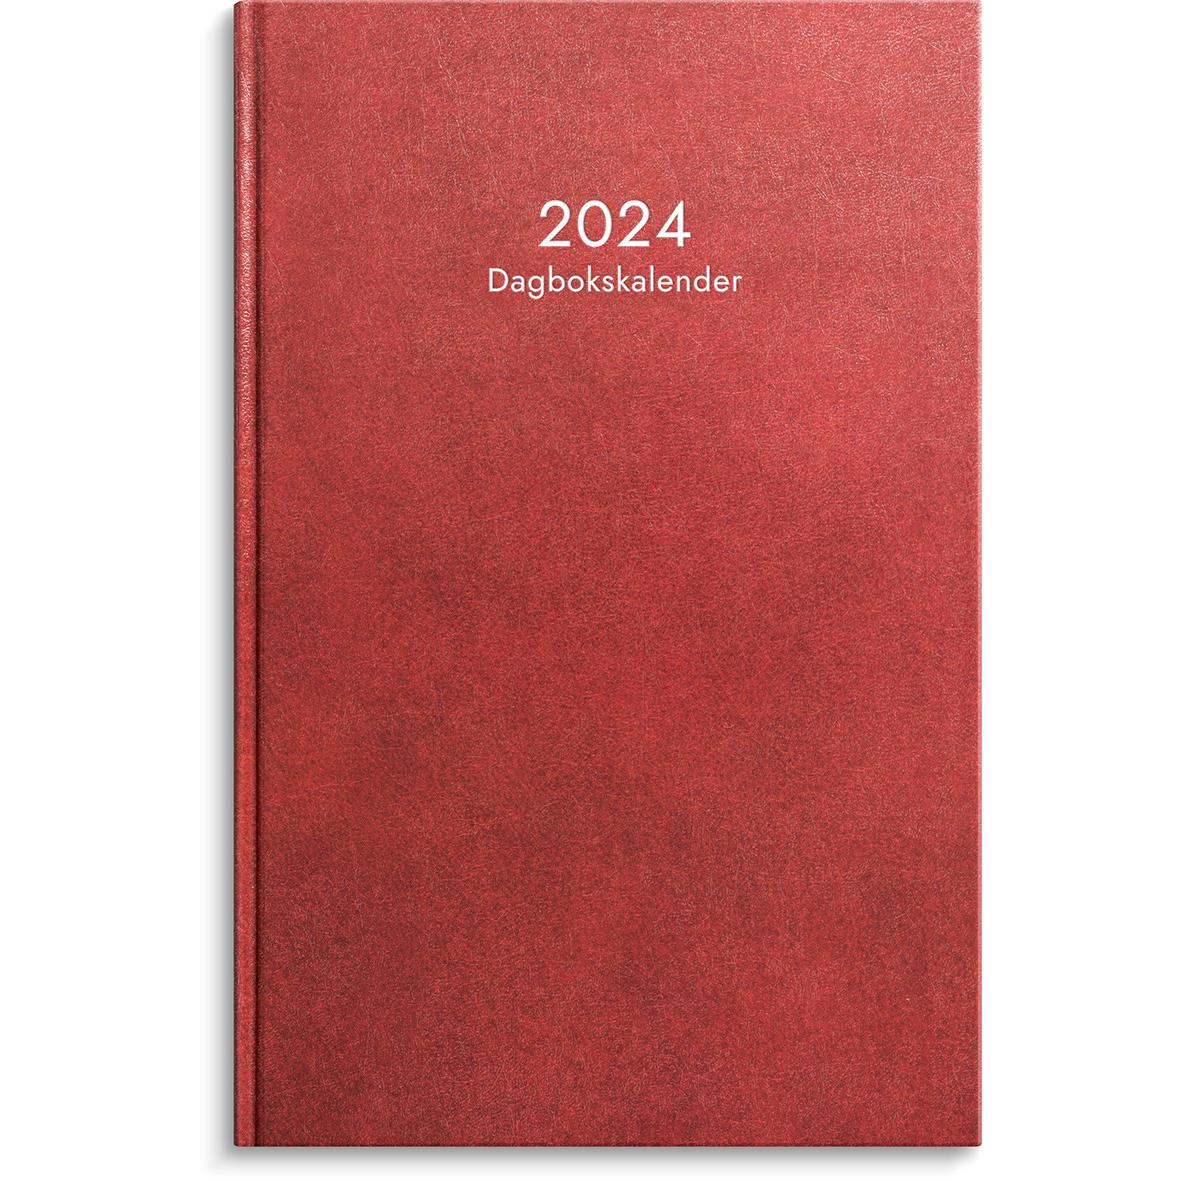 Almanacka Burde 1087 Dagbokskalender Konstläder Inbunden 2022 Röd 16010396_1